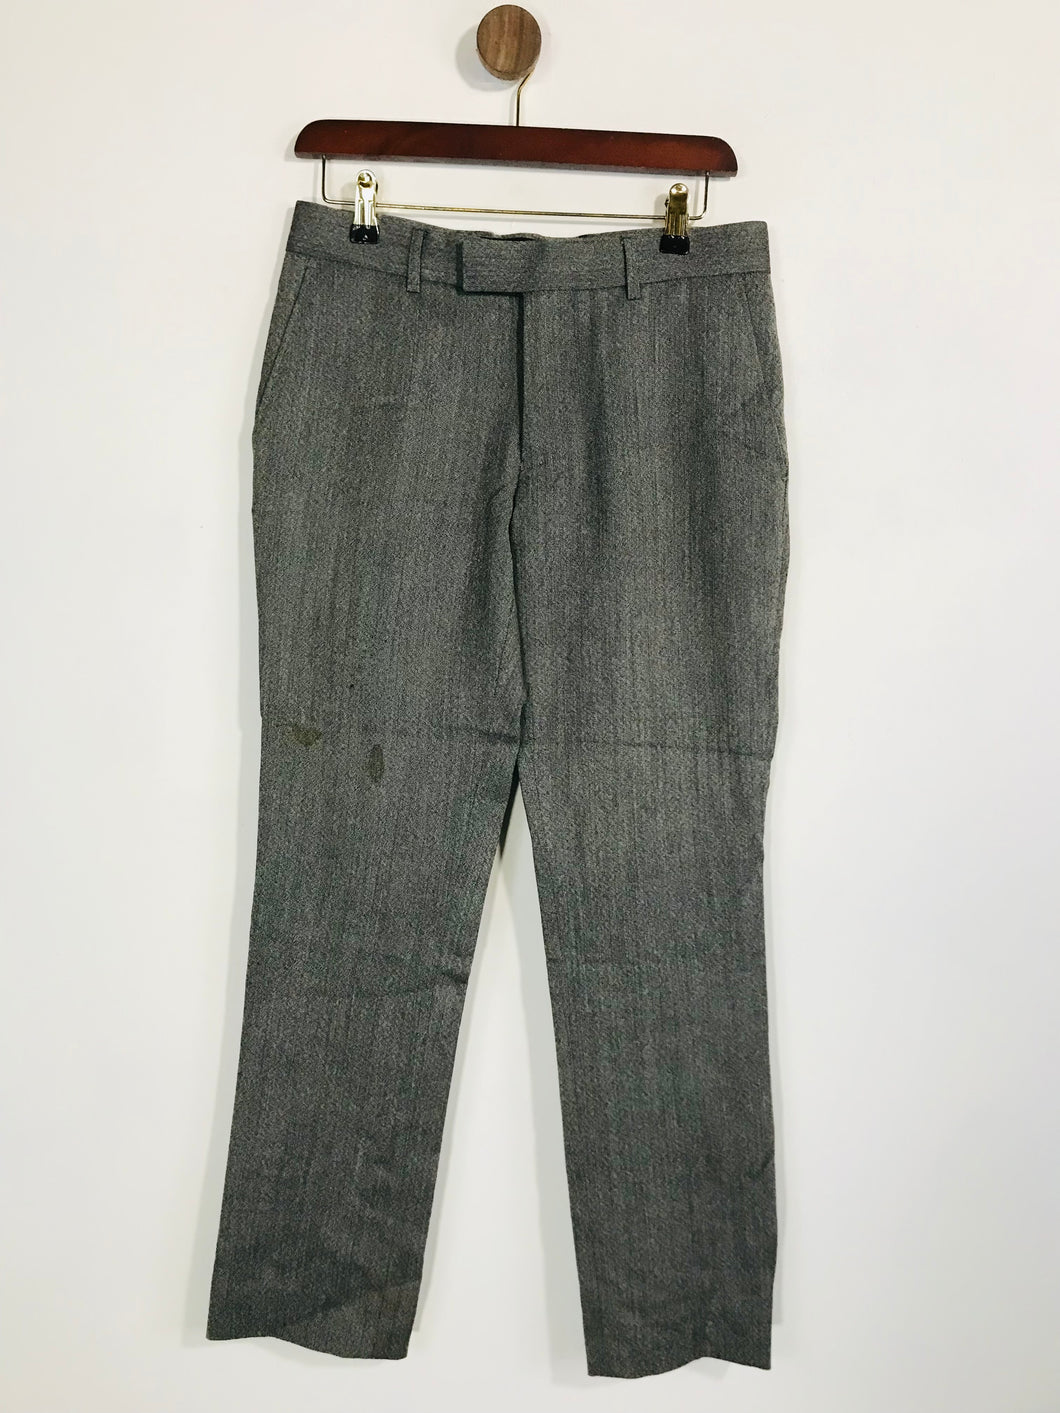 Topman Men's Wool Smart Trousers | 30 | Grey